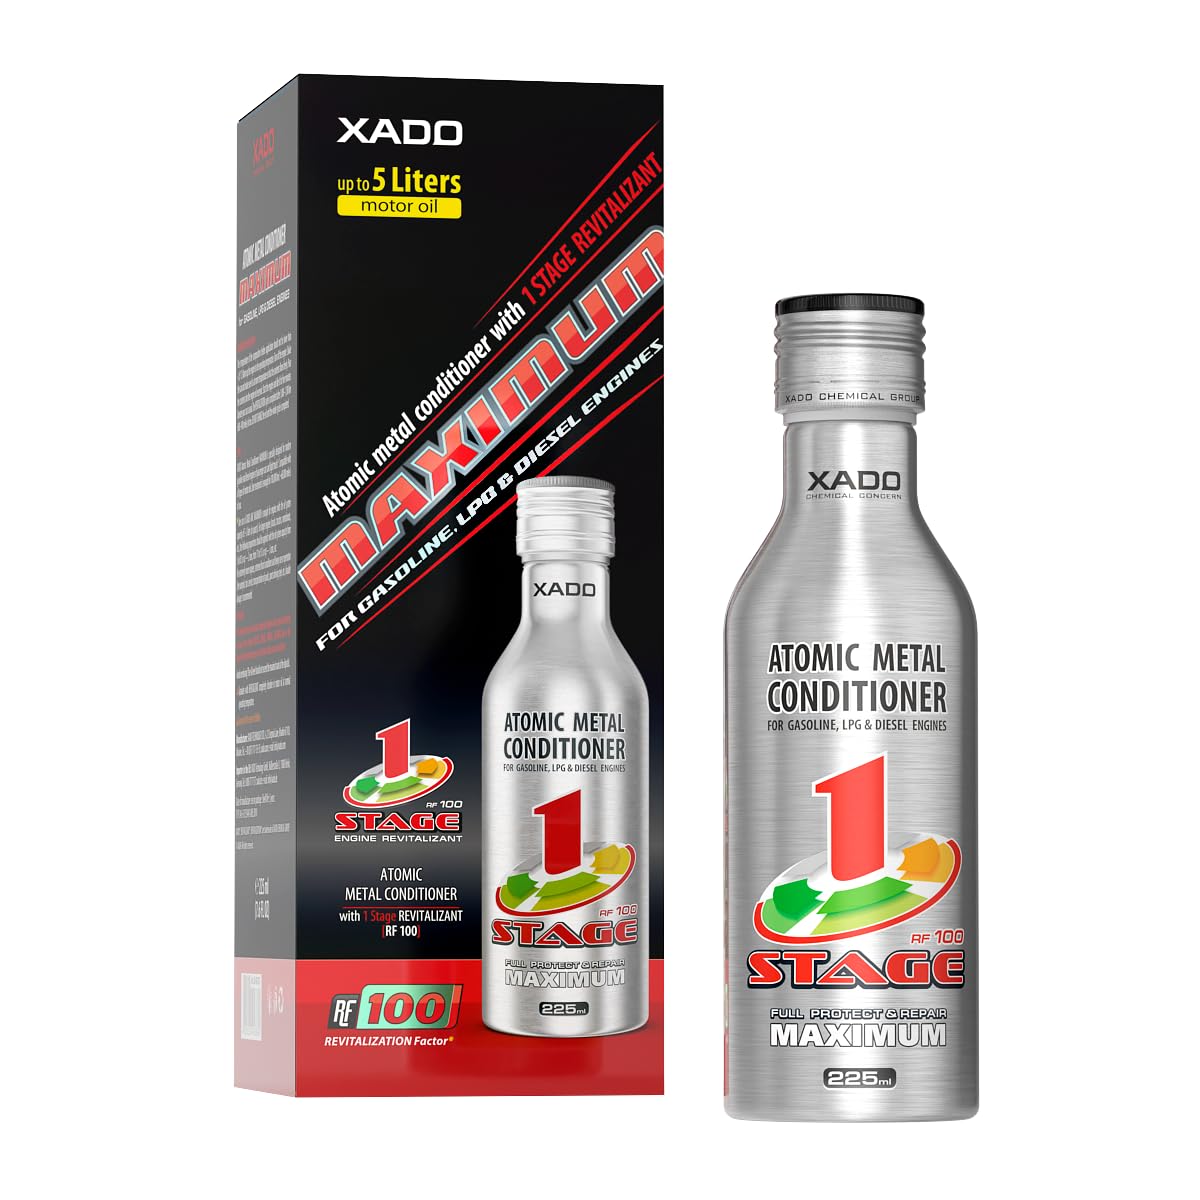 XADO Motor-Verschleißschutz 1 Stage Maximum Atomarer Metallconditioner mit Revitalizant - Aufbau verschlissener Oberflächen & extremer Verschleißschutz des Motors (Flasche, 225 ml von XADO